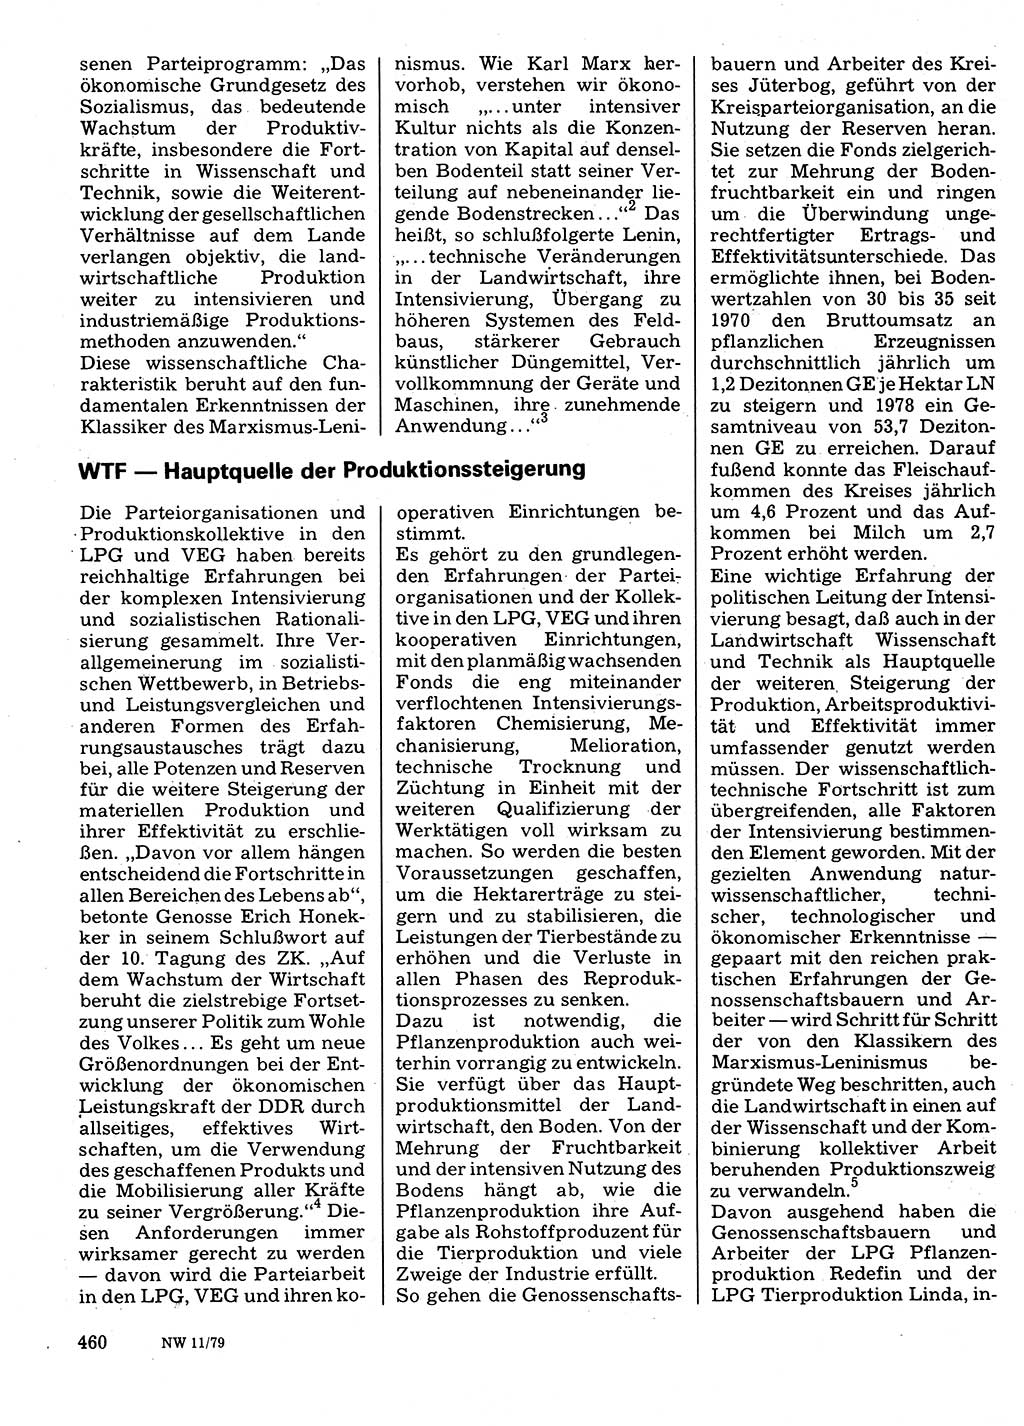 Neuer Weg (NW), Organ des Zentralkomitees (ZK) der SED (Sozialistische Einheitspartei Deutschlands) für Fragen des Parteilebens, 34. Jahrgang [Deutsche Demokratische Republik (DDR)] 1979, Seite 460 (NW ZK SED DDR 1979, S. 460)